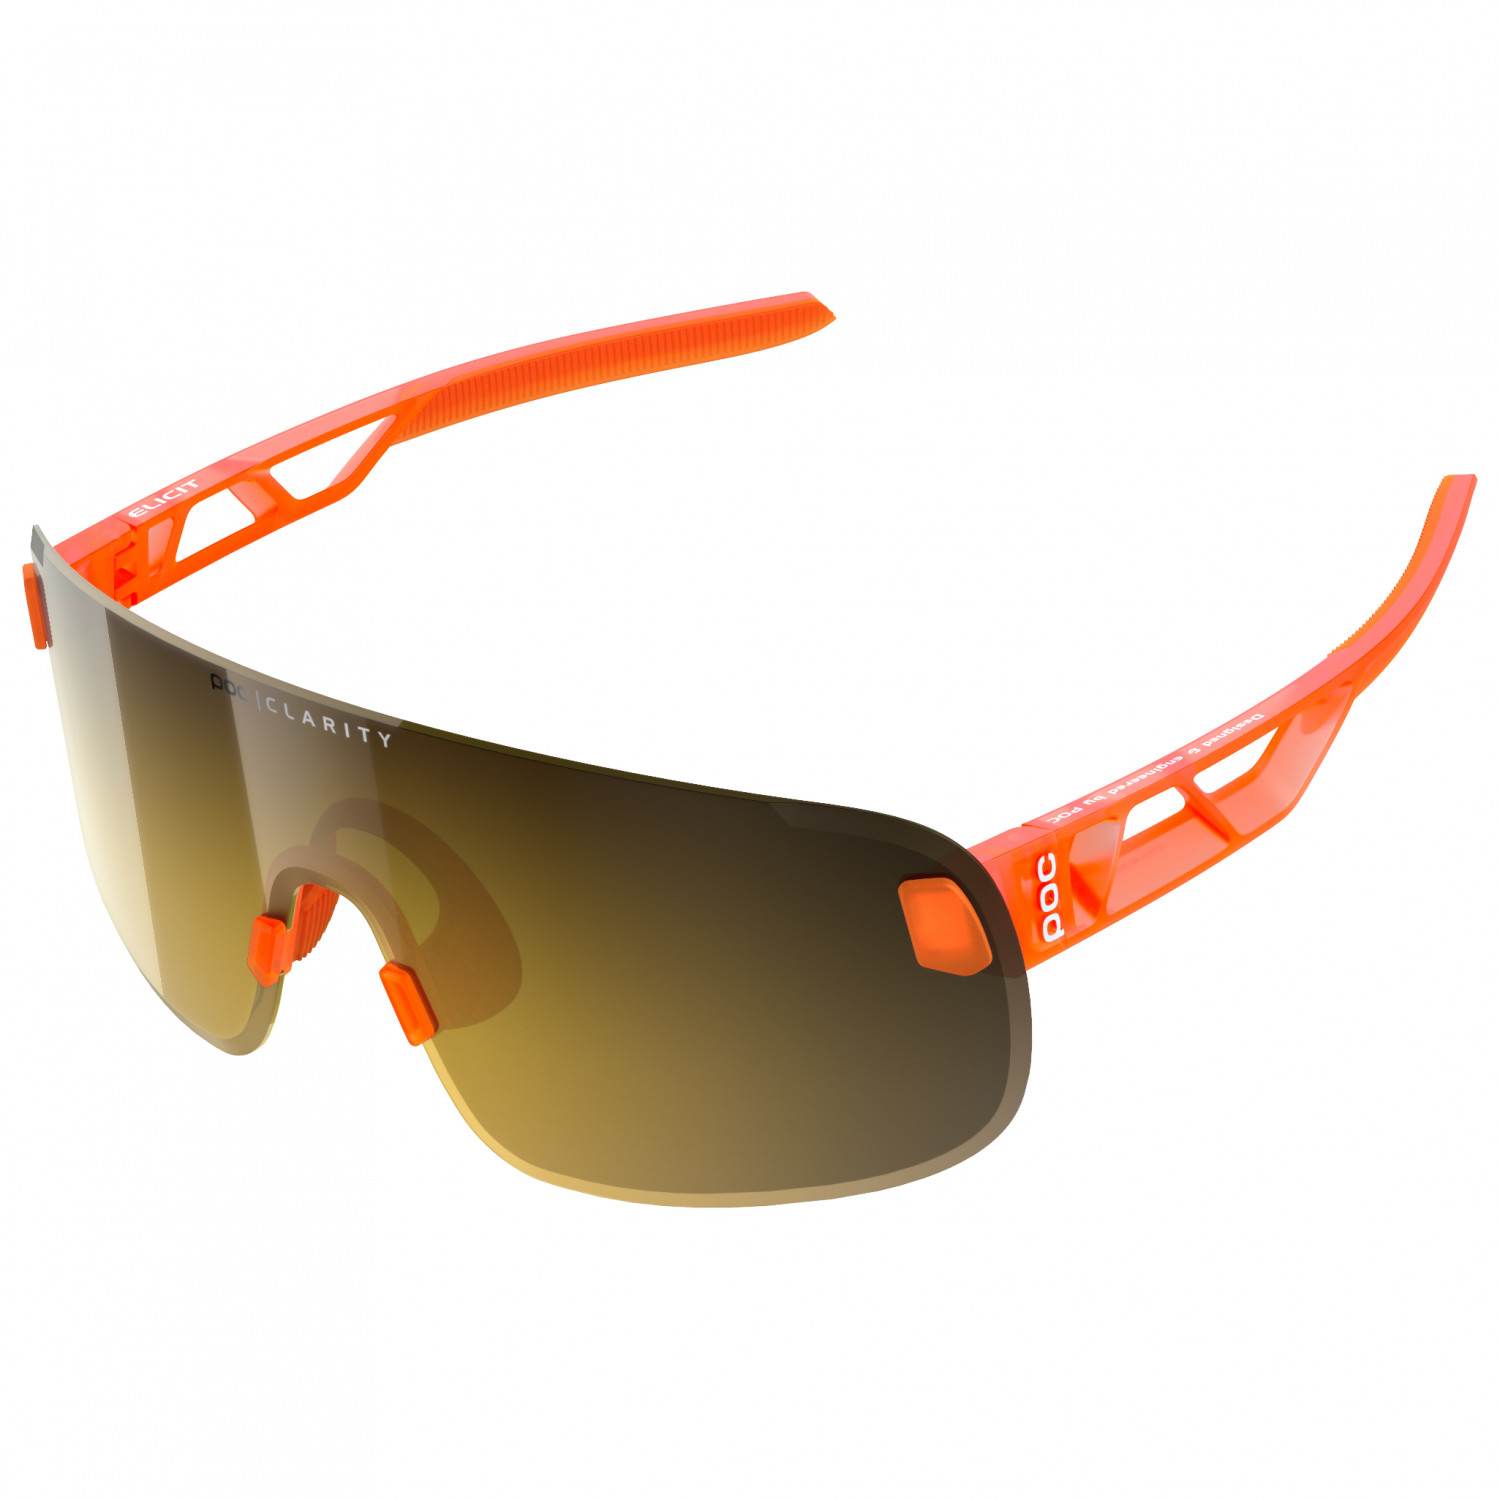 Велосипедные очки Poc Elicit Mirror Cat 2 VLT 20 26%, цвет Fluorescent Orange Translucent